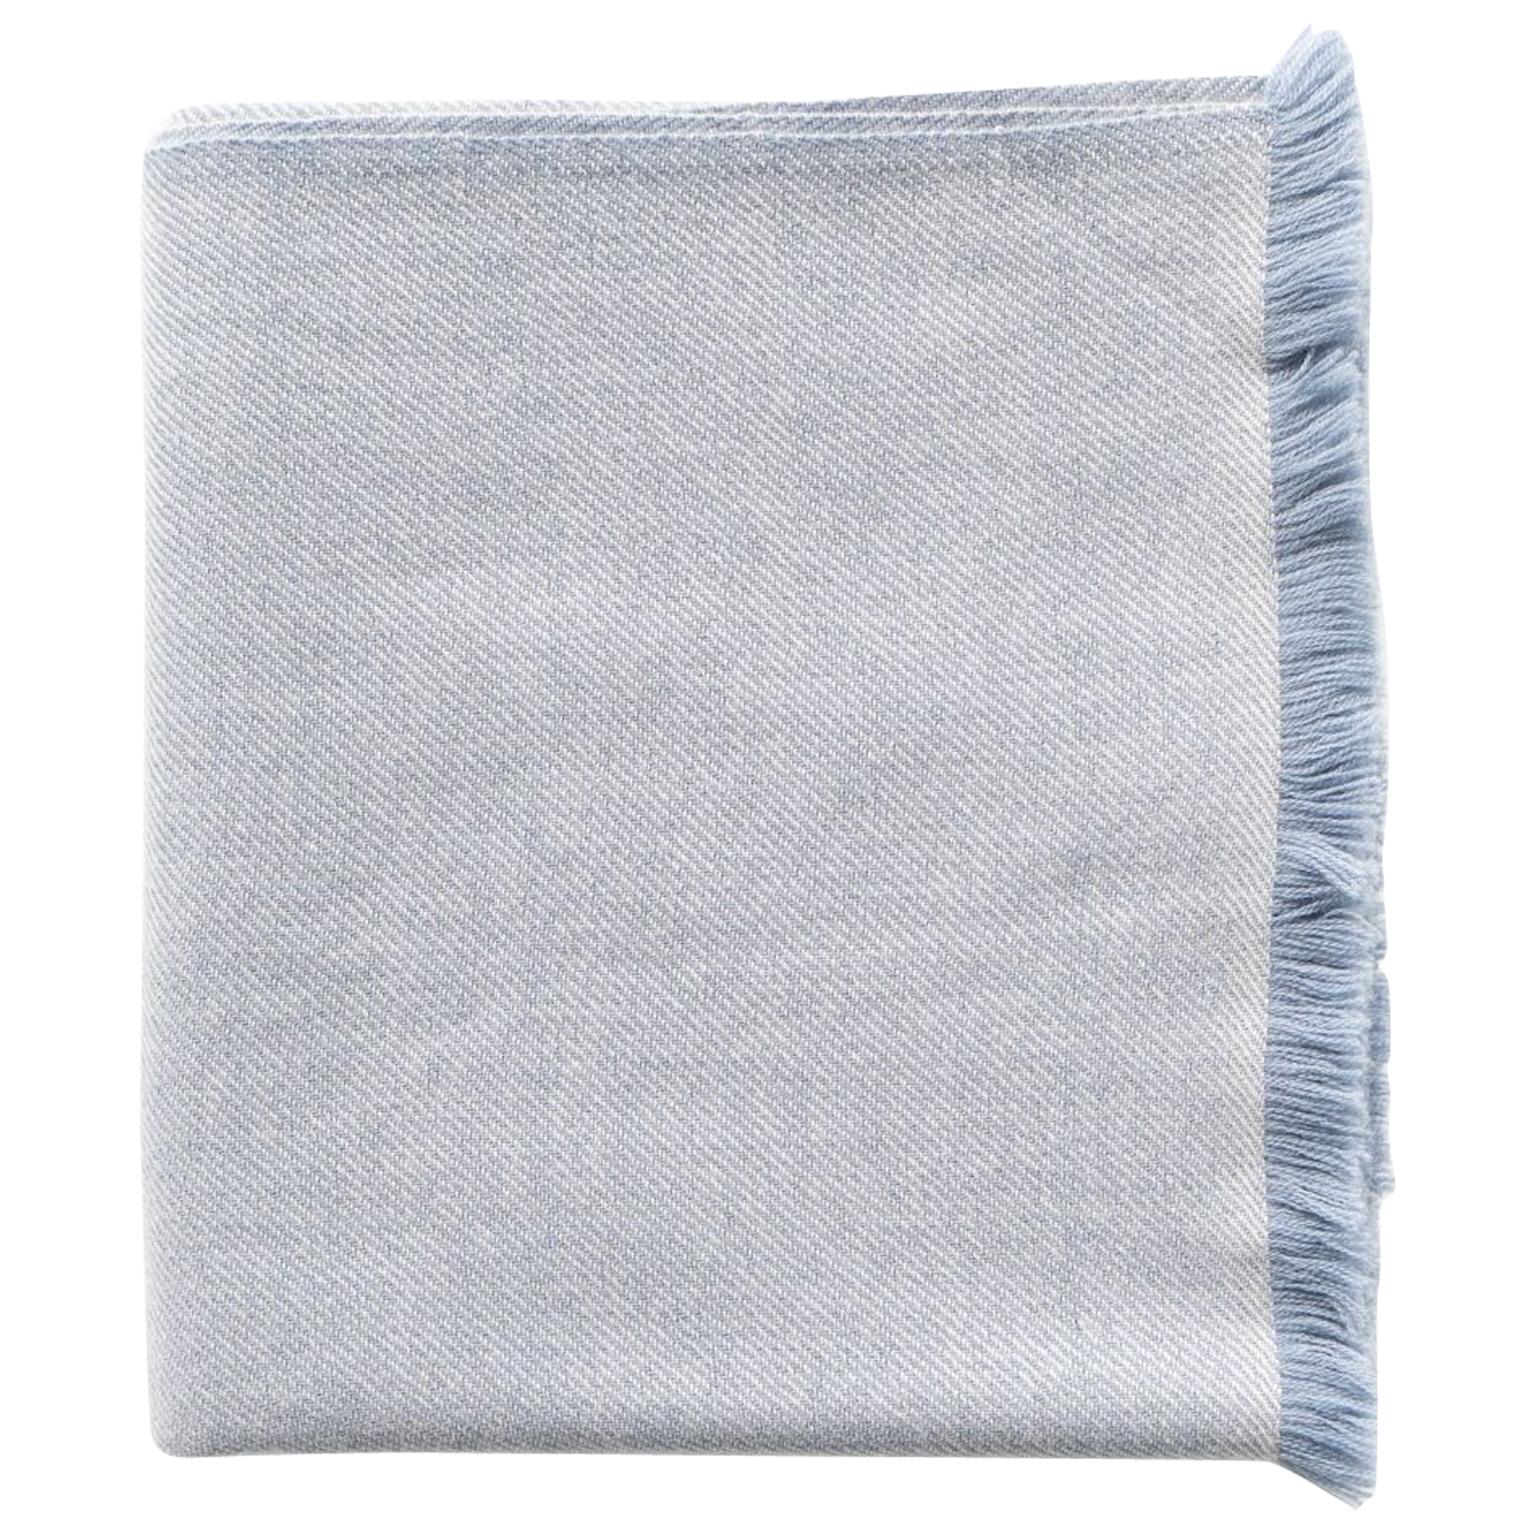 BORO - Plaid / couverture en sergé de mérinos pur et doux, tissé à la main, de couleur bleu abat-jour